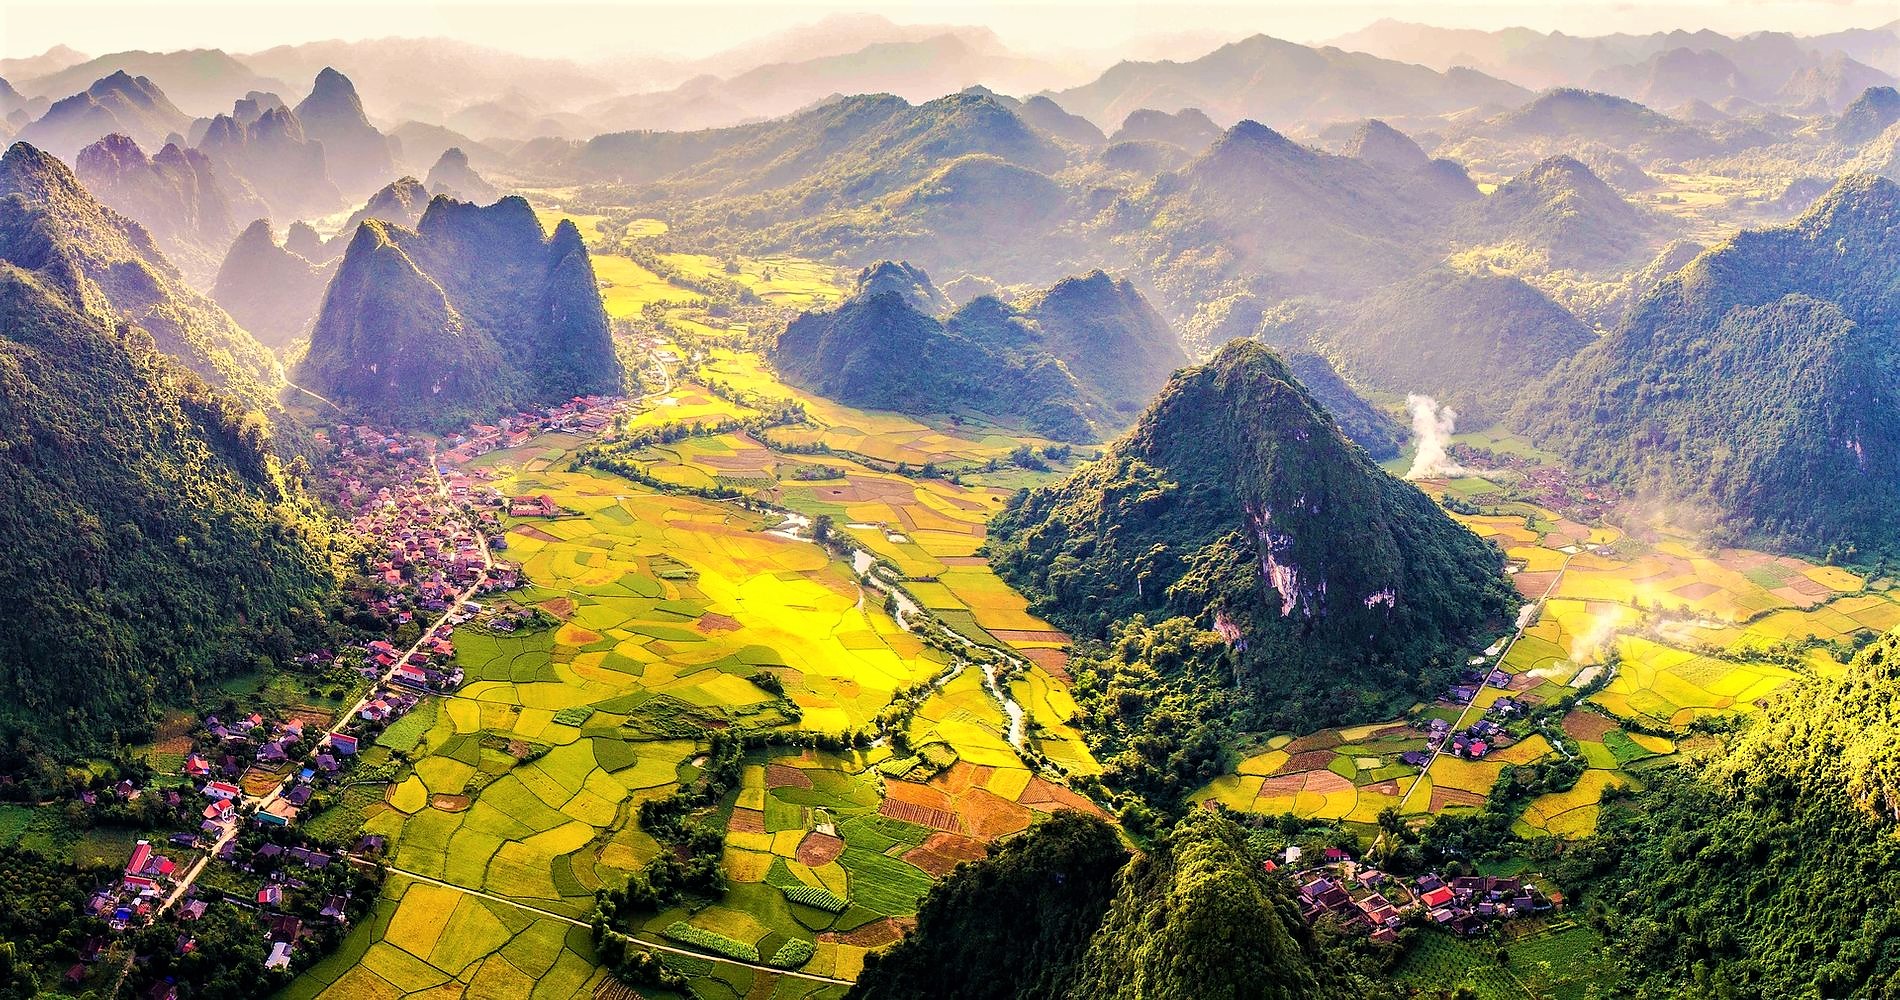 Background Image - Vietnam